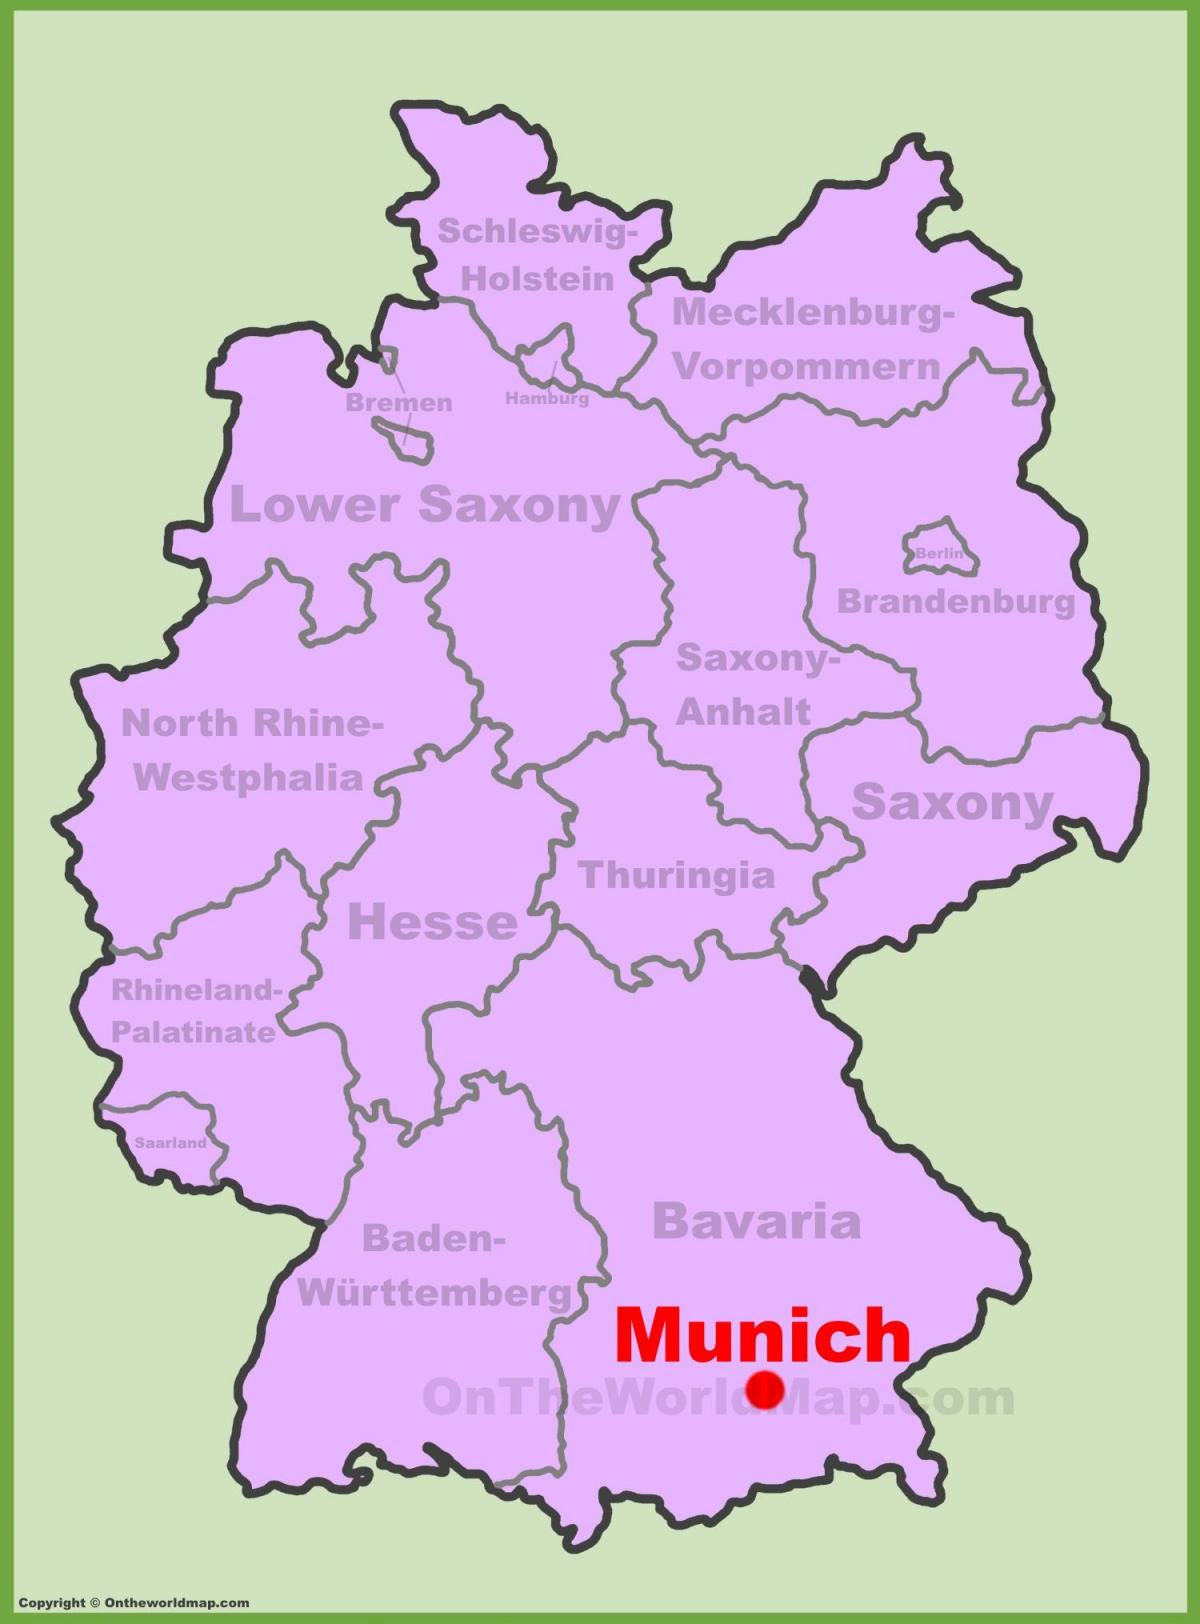 नक्शा म्यूनिख के स्थान